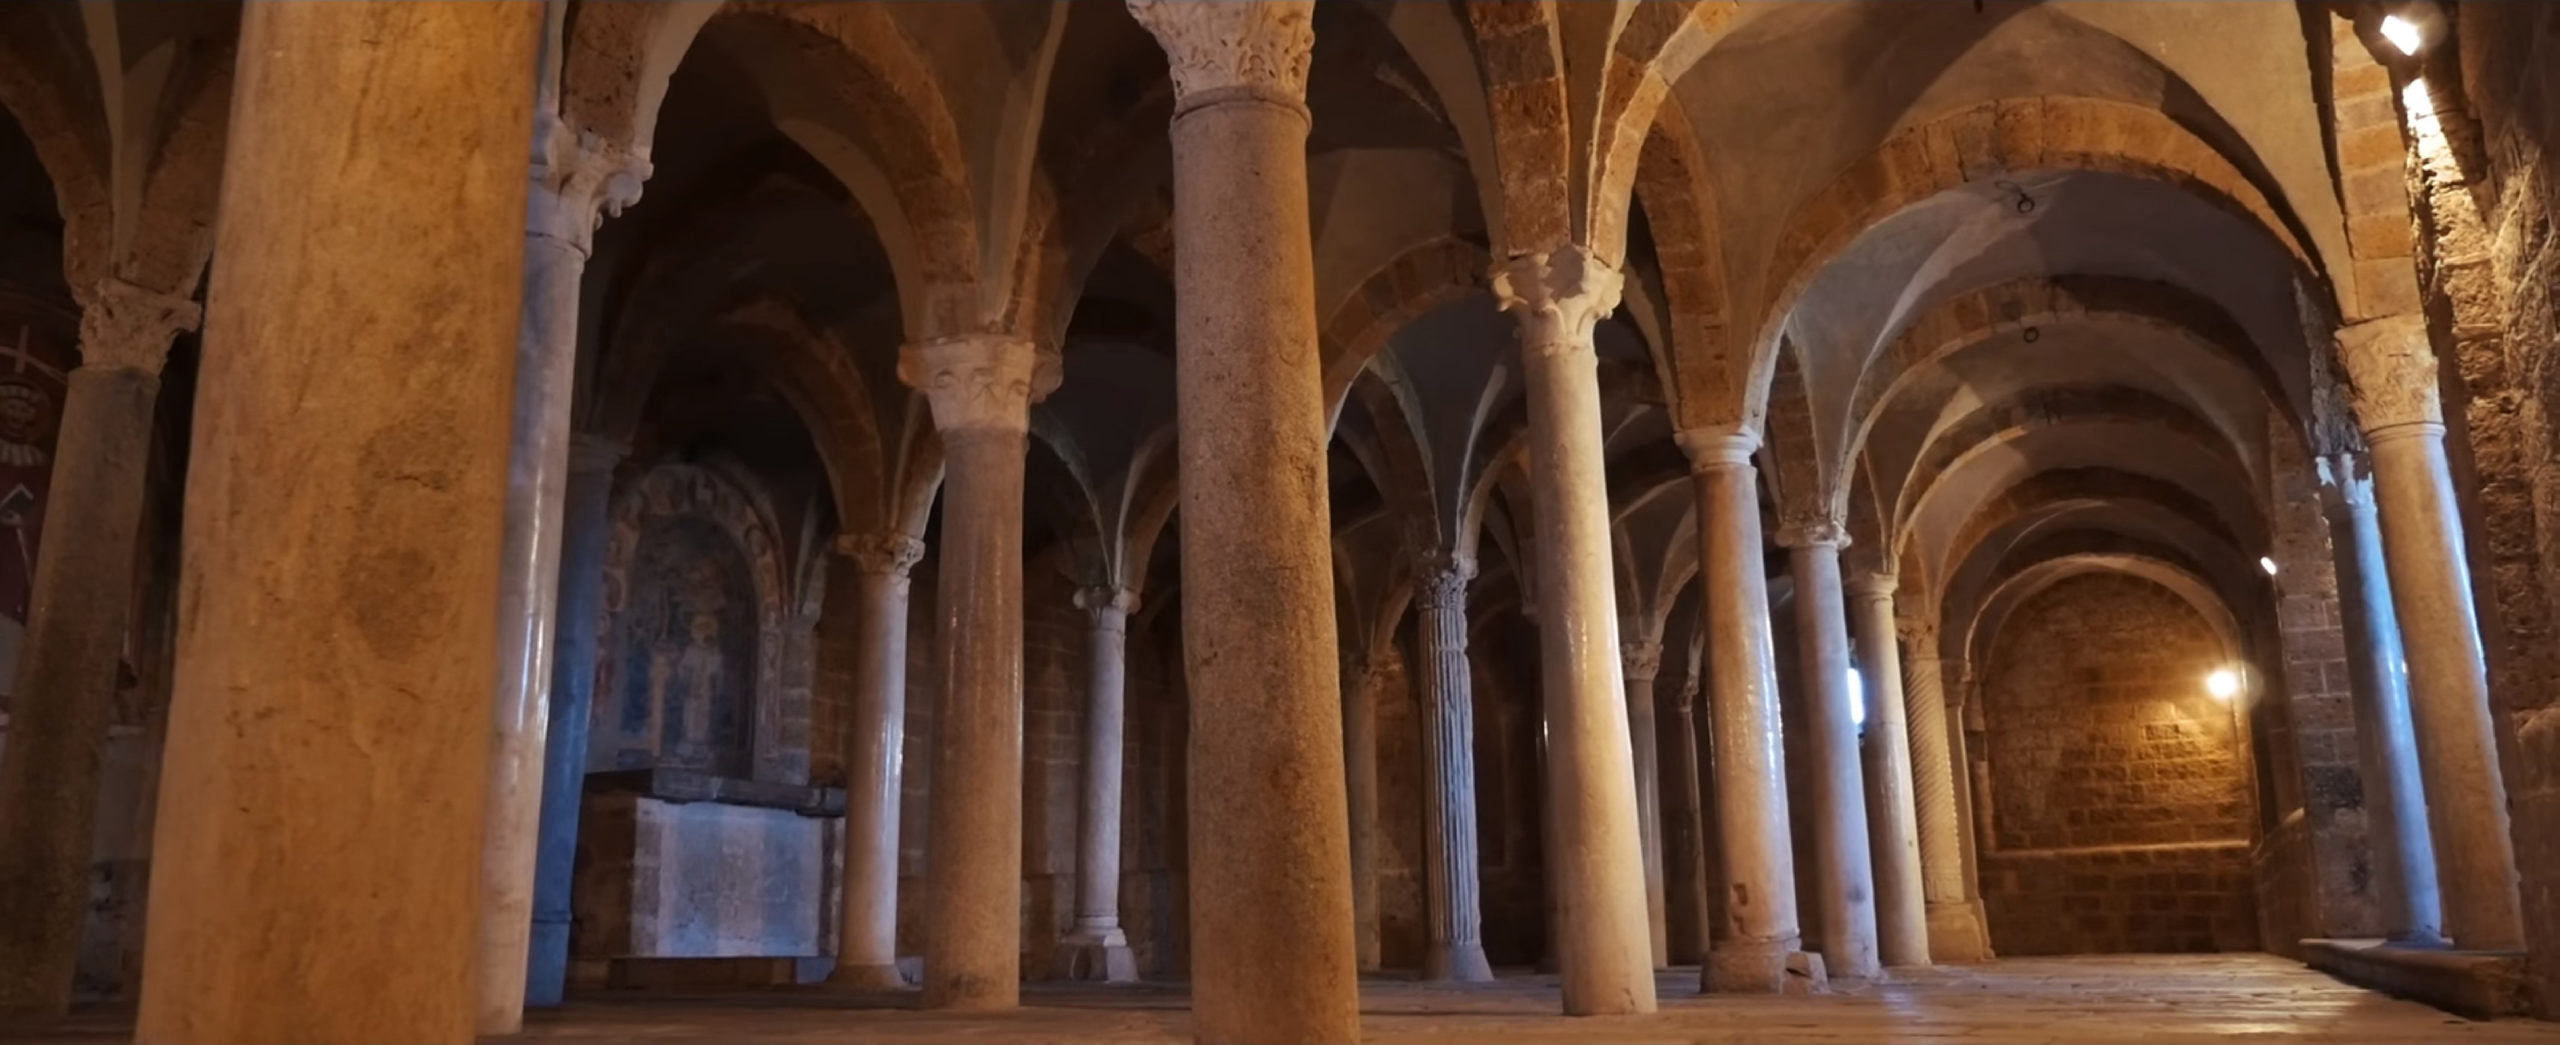 Tuscania - Cripta della Basilica di San Pietro